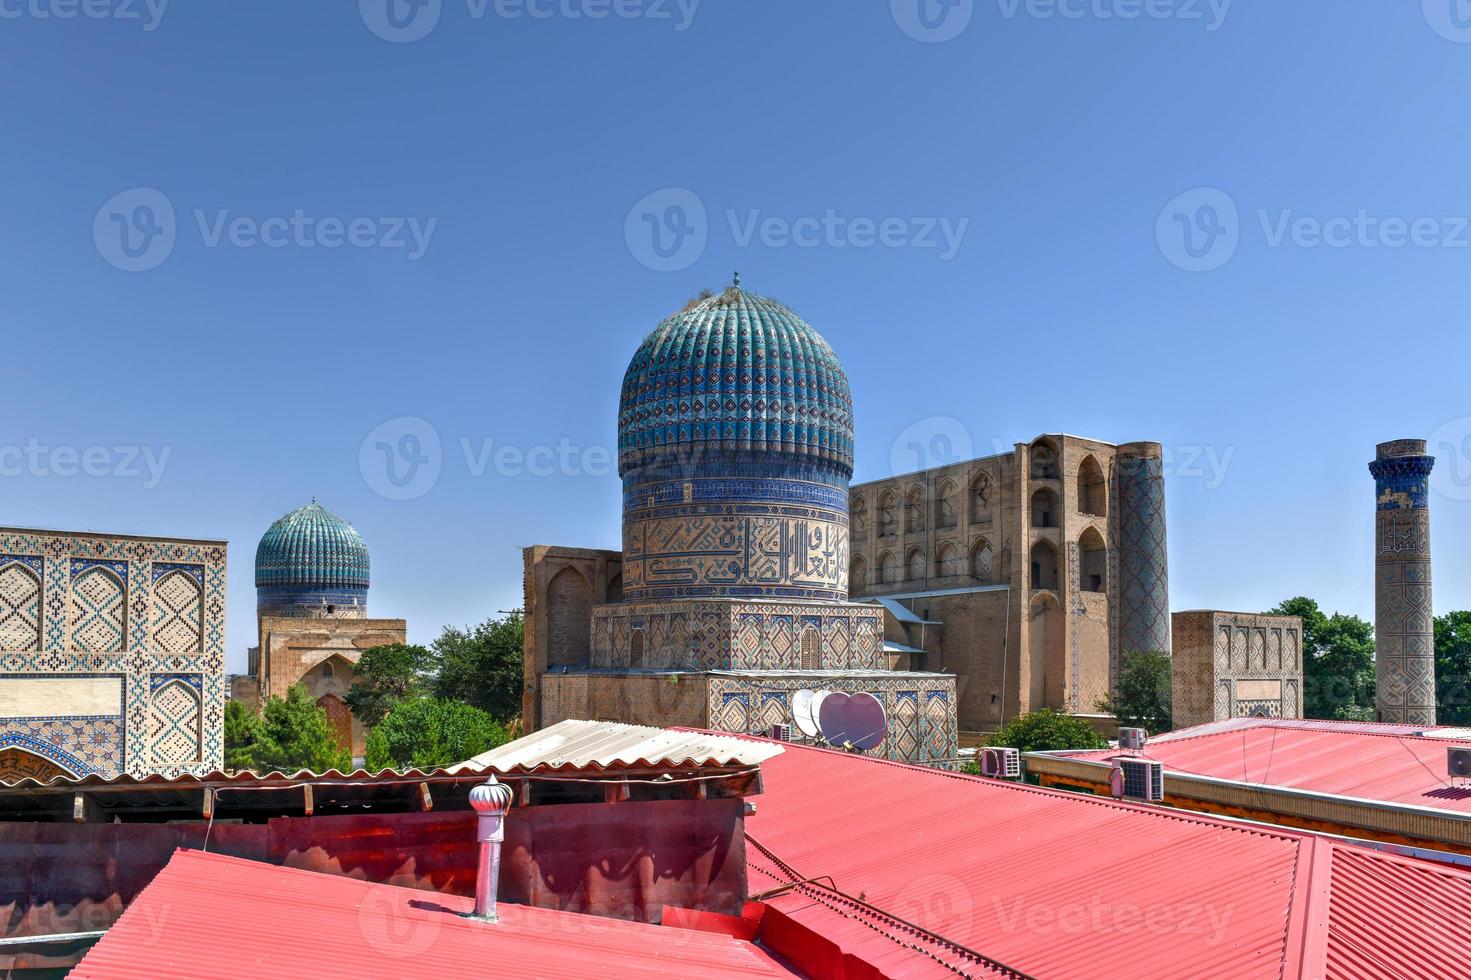 Bibi-Khanym-Moschee in Samarkand, Usbekistan. im 15. Jahrhundert war sie eine der größten und prächtigsten Moscheen der islamischen Welt. foto